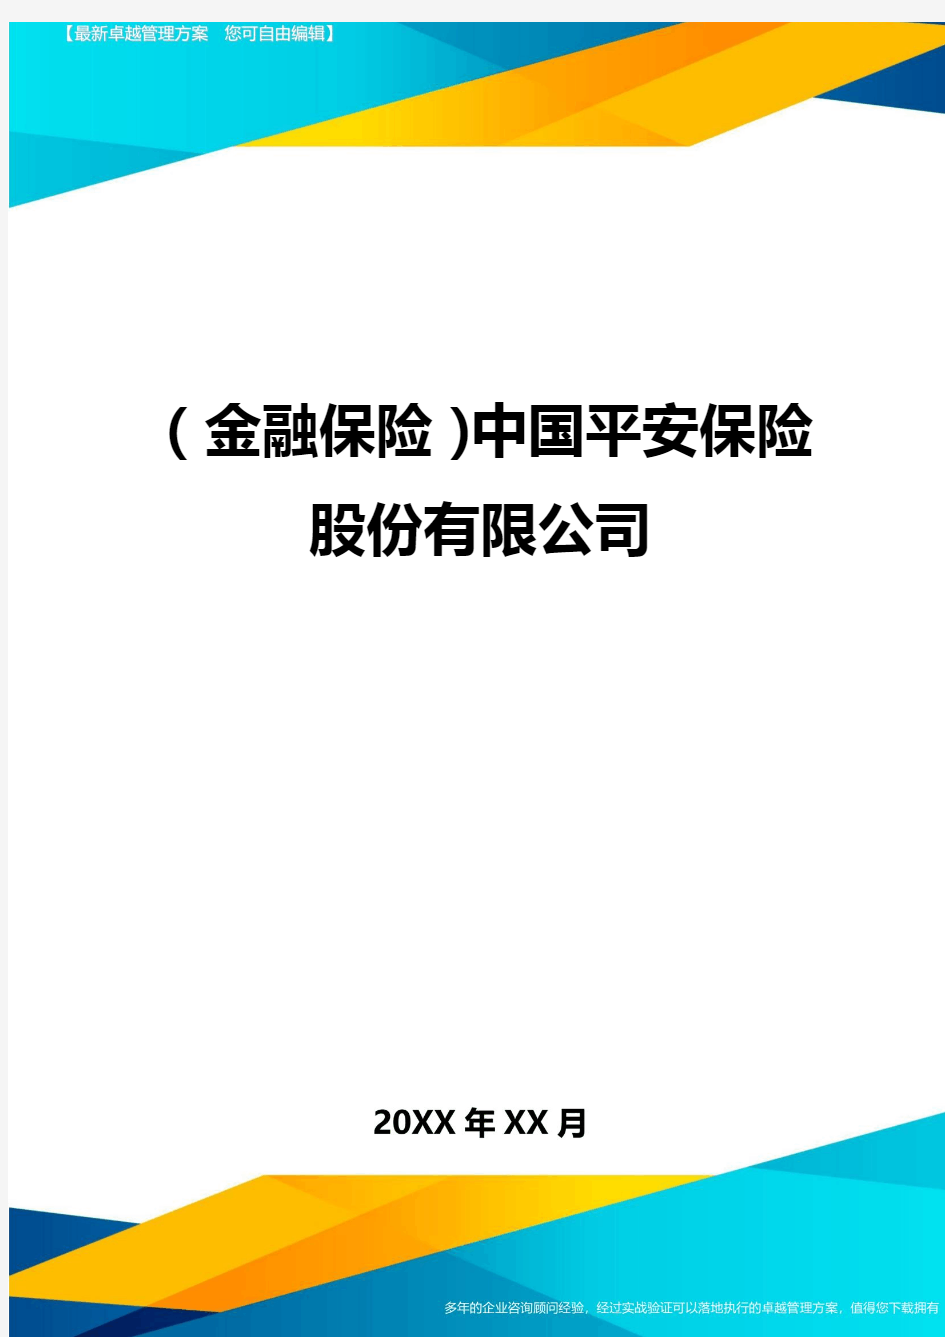 2020年(金融保险)中国平安保险股份有限公司